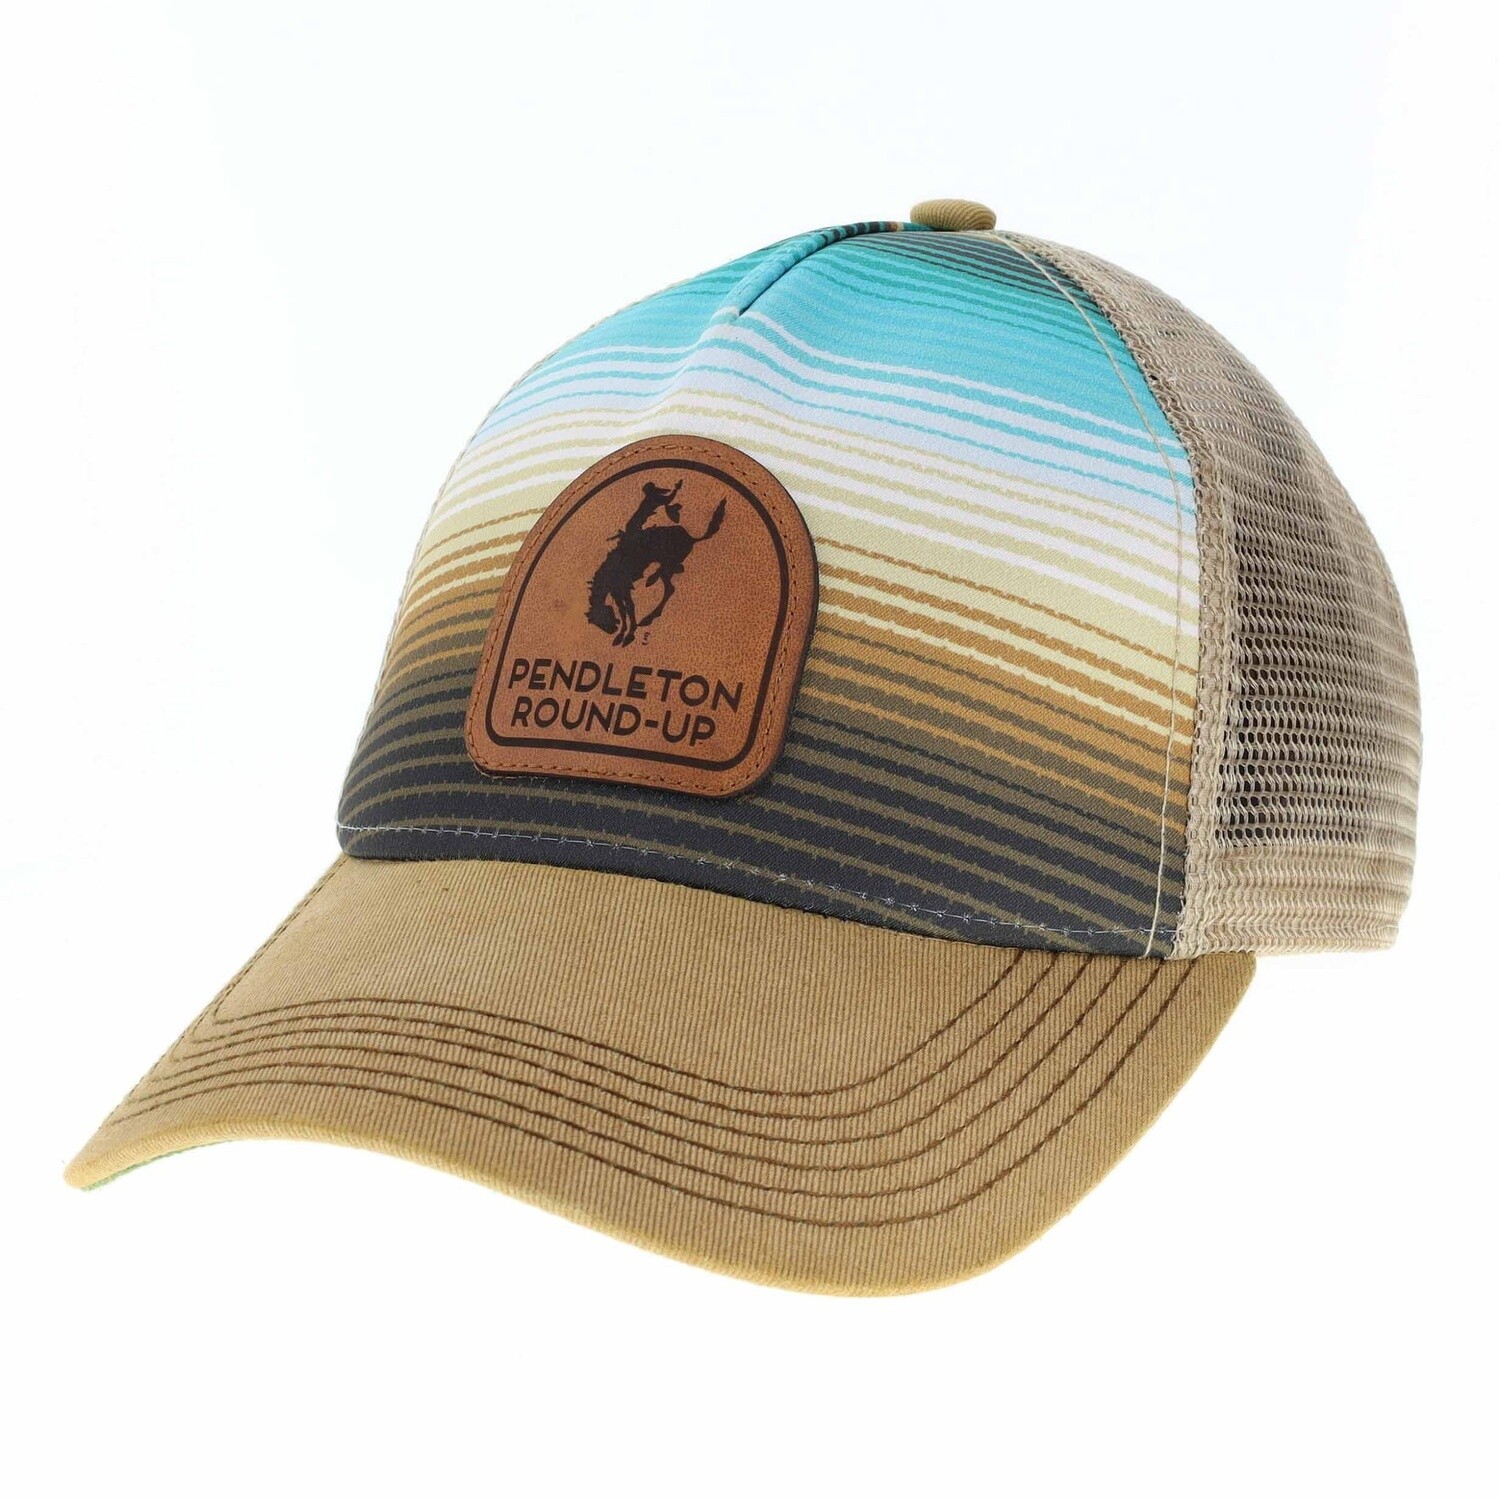 Pendleton Round-Up Radial Stripe Hat